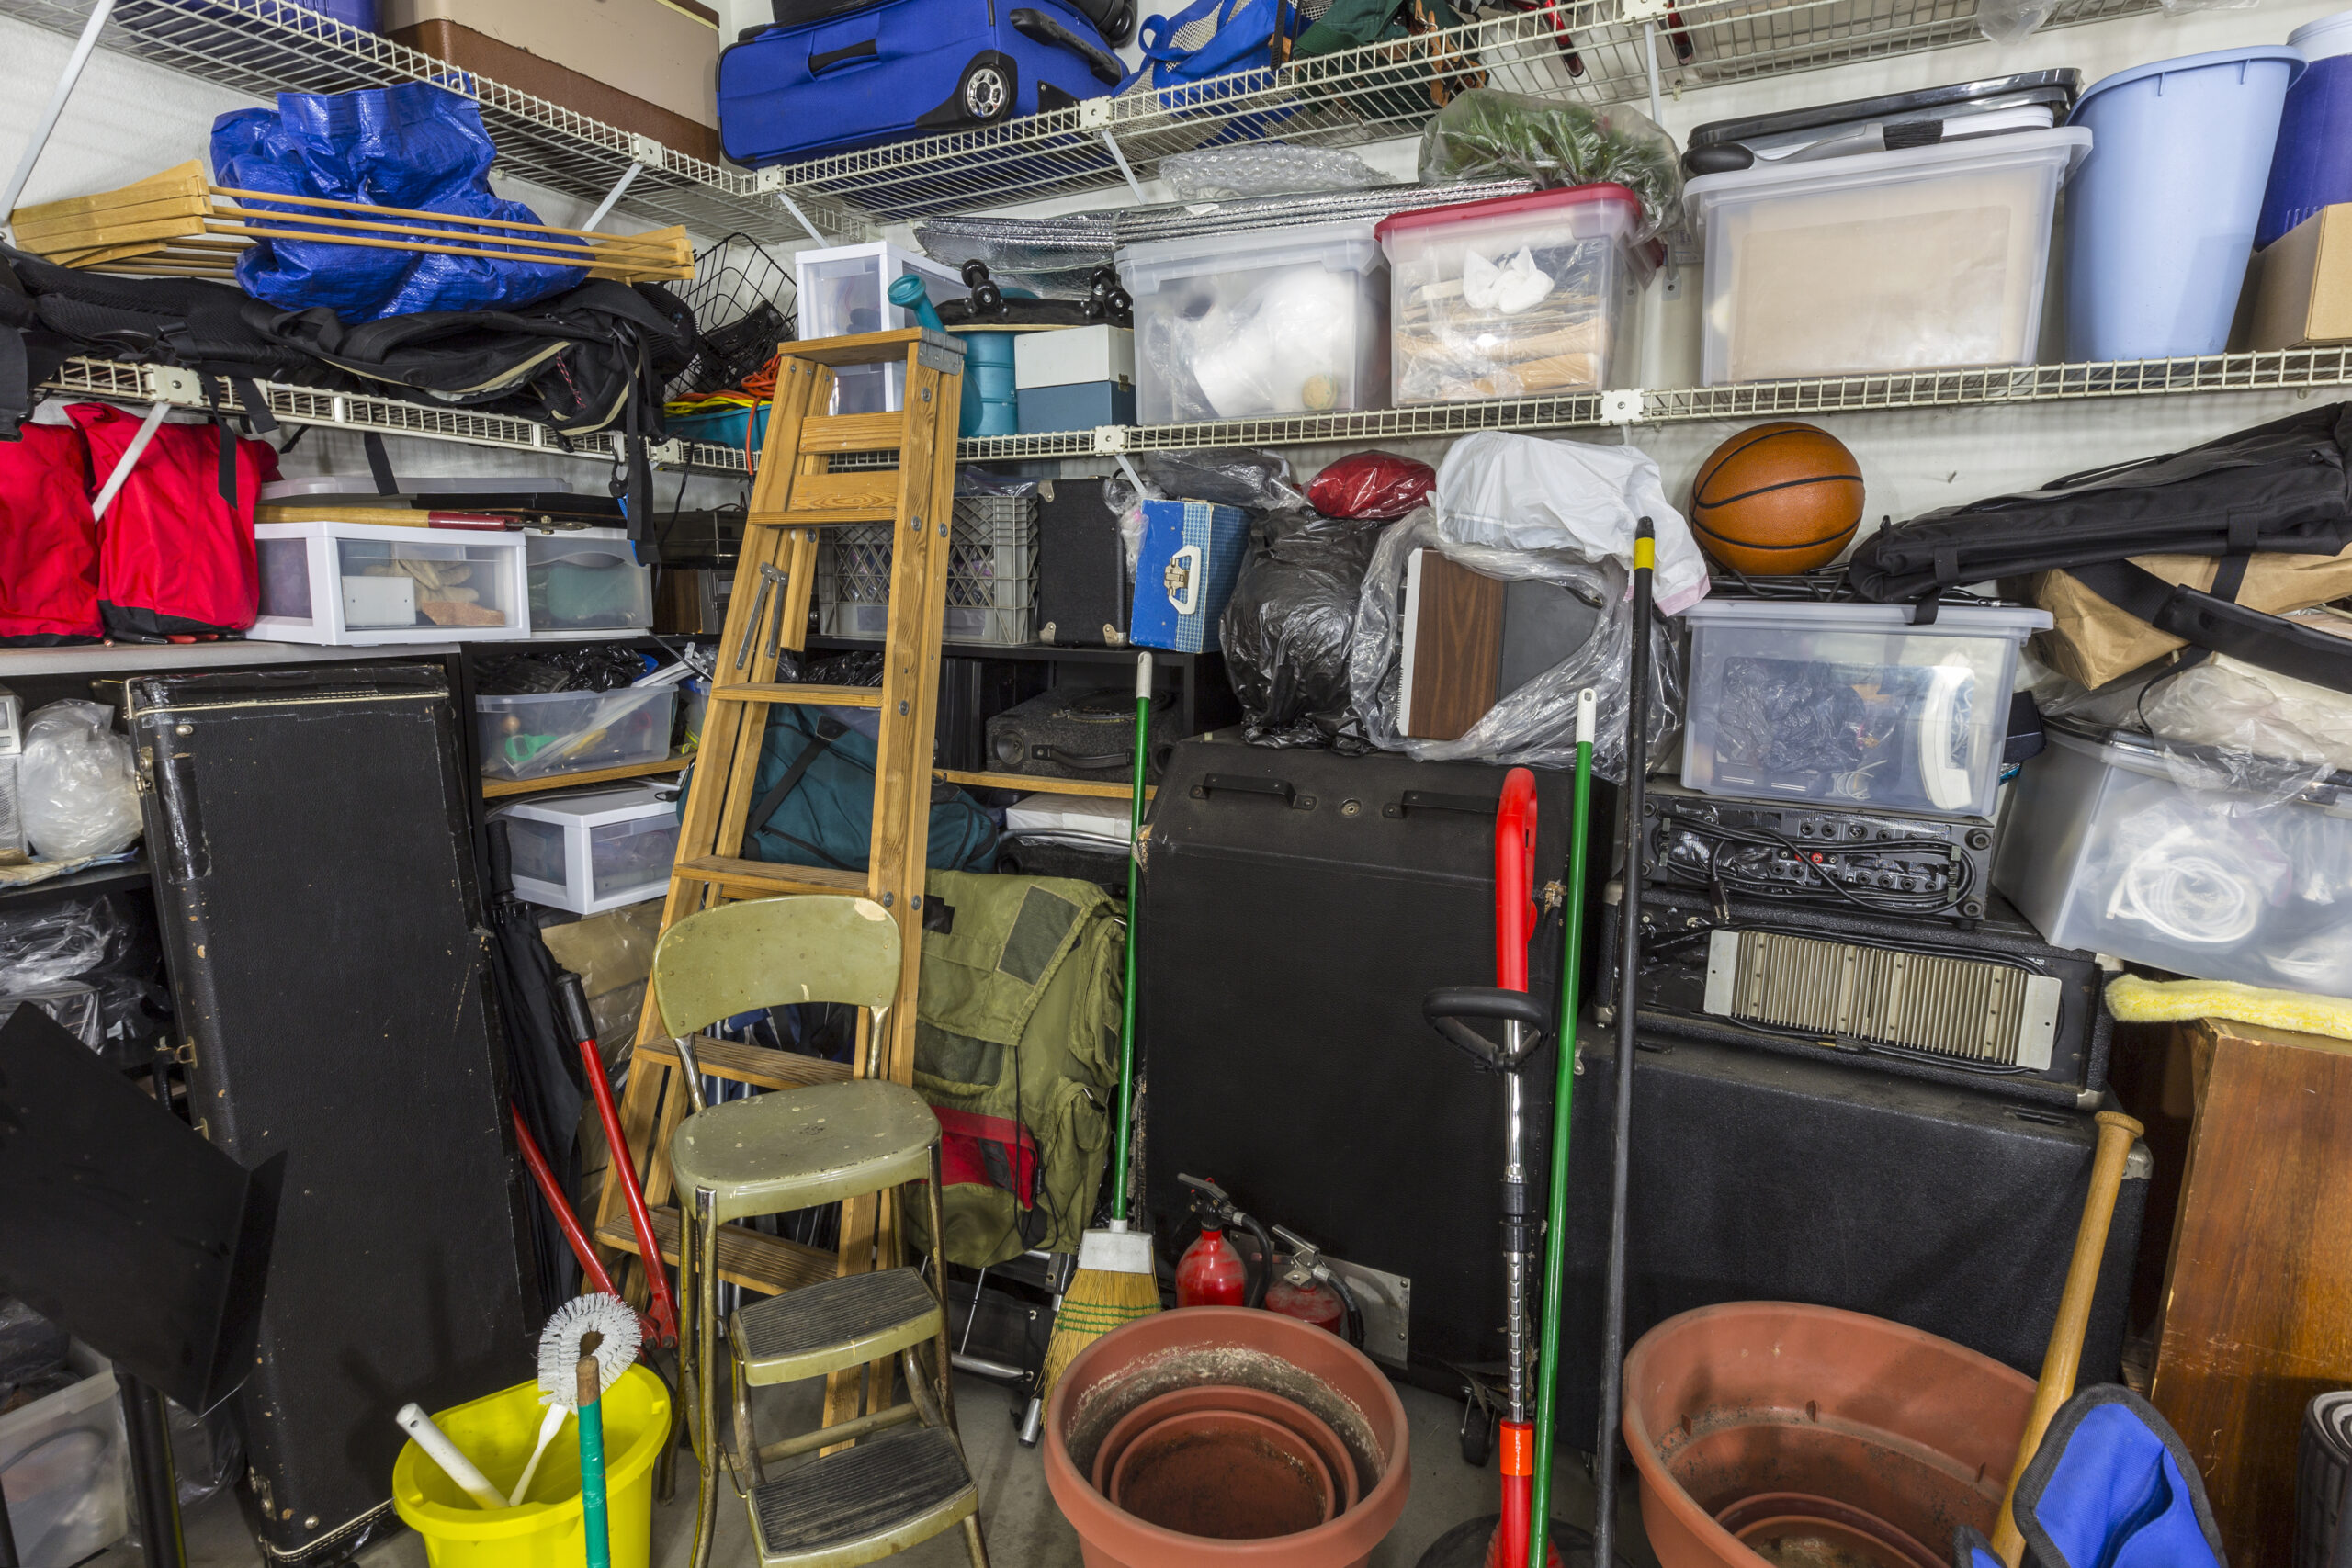 Cluttered garage